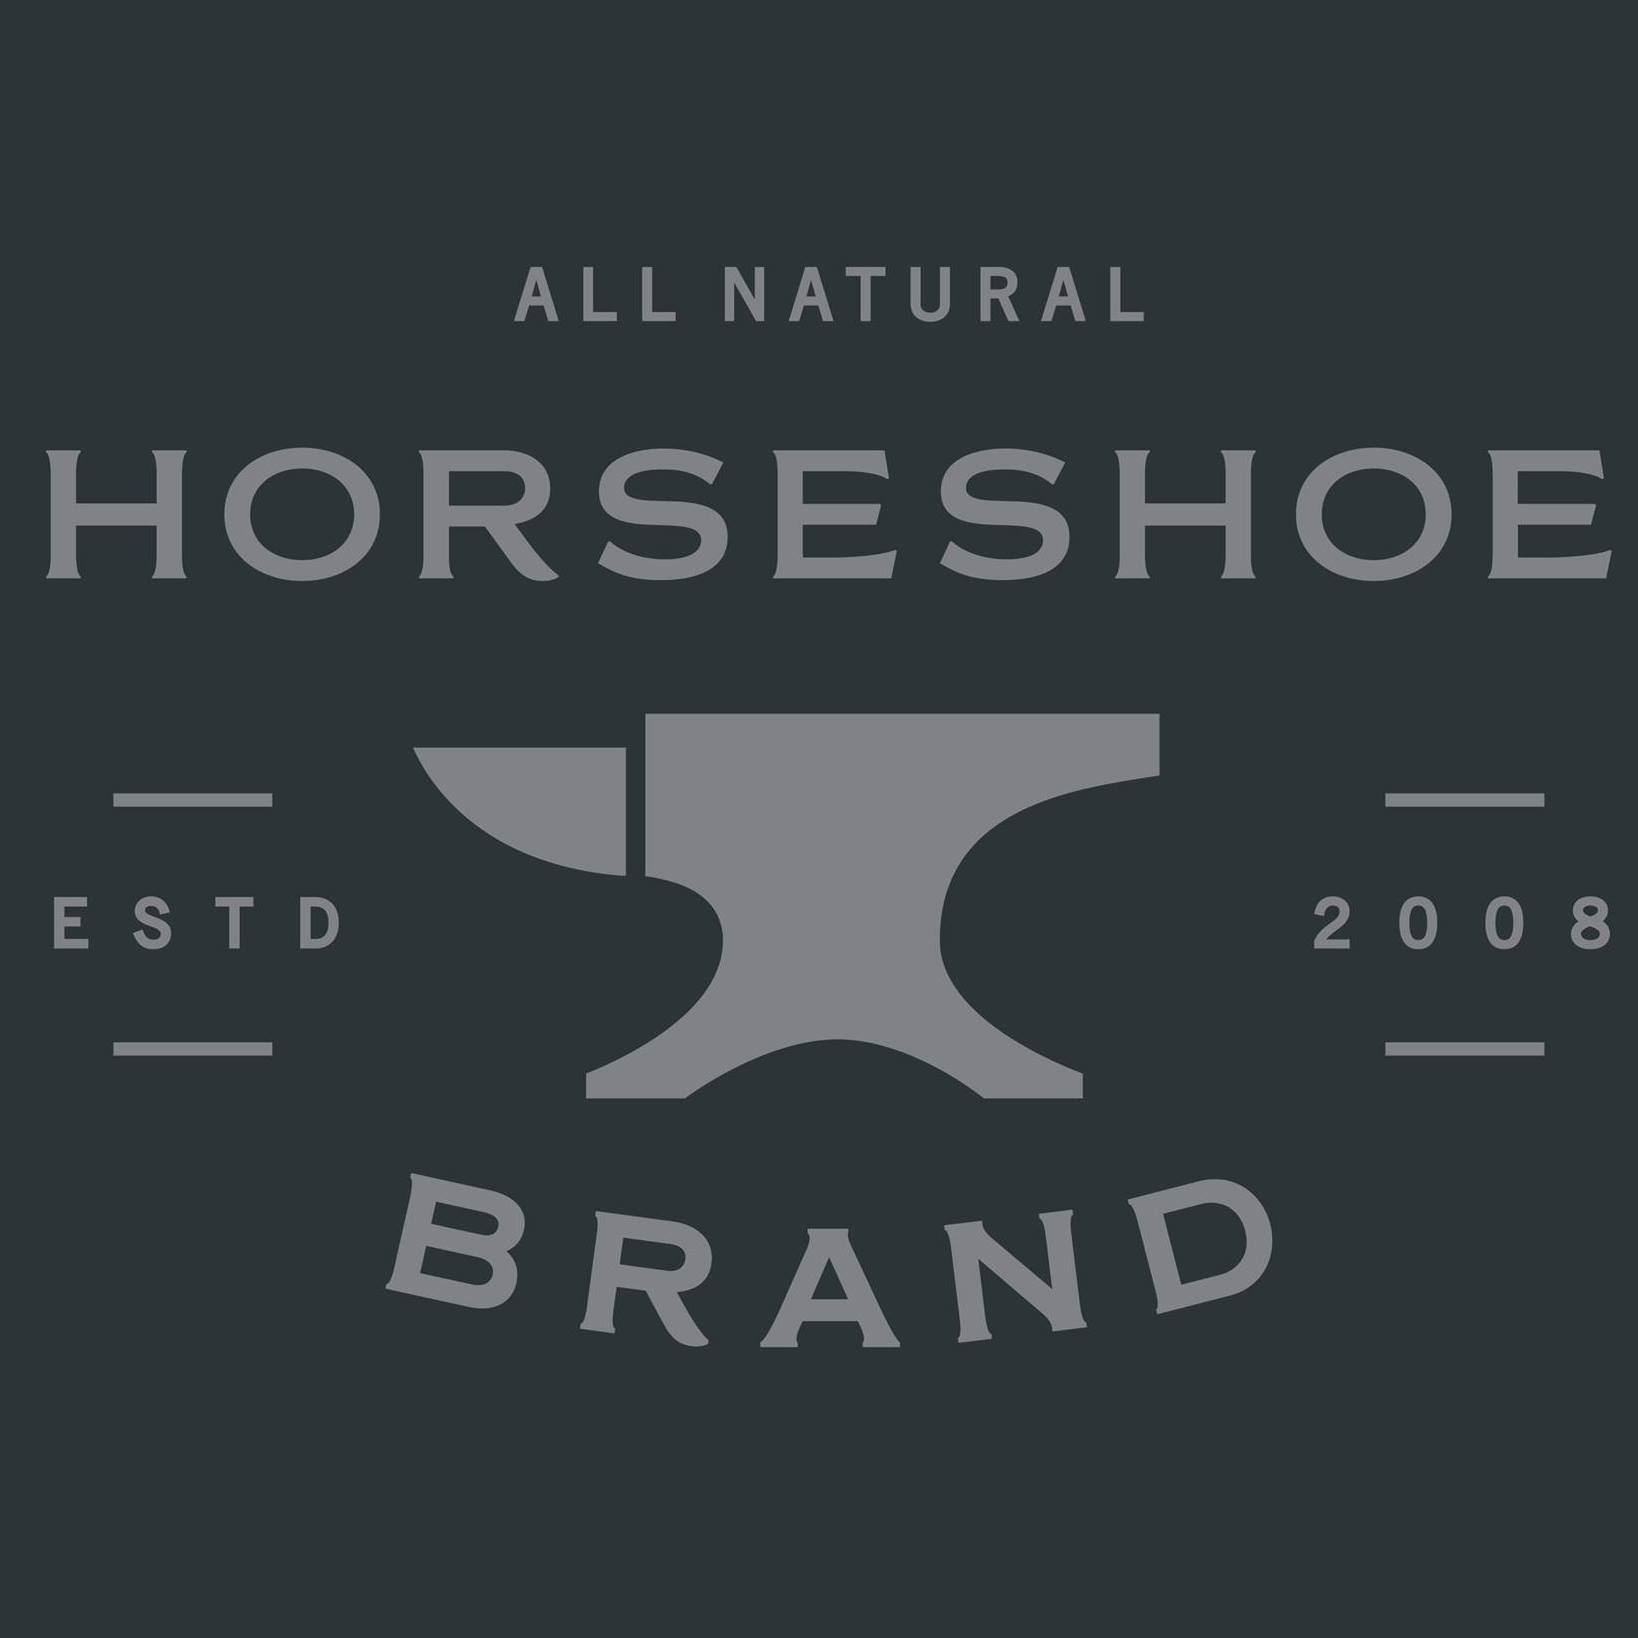 Horseshoe Brand Hot Sauce